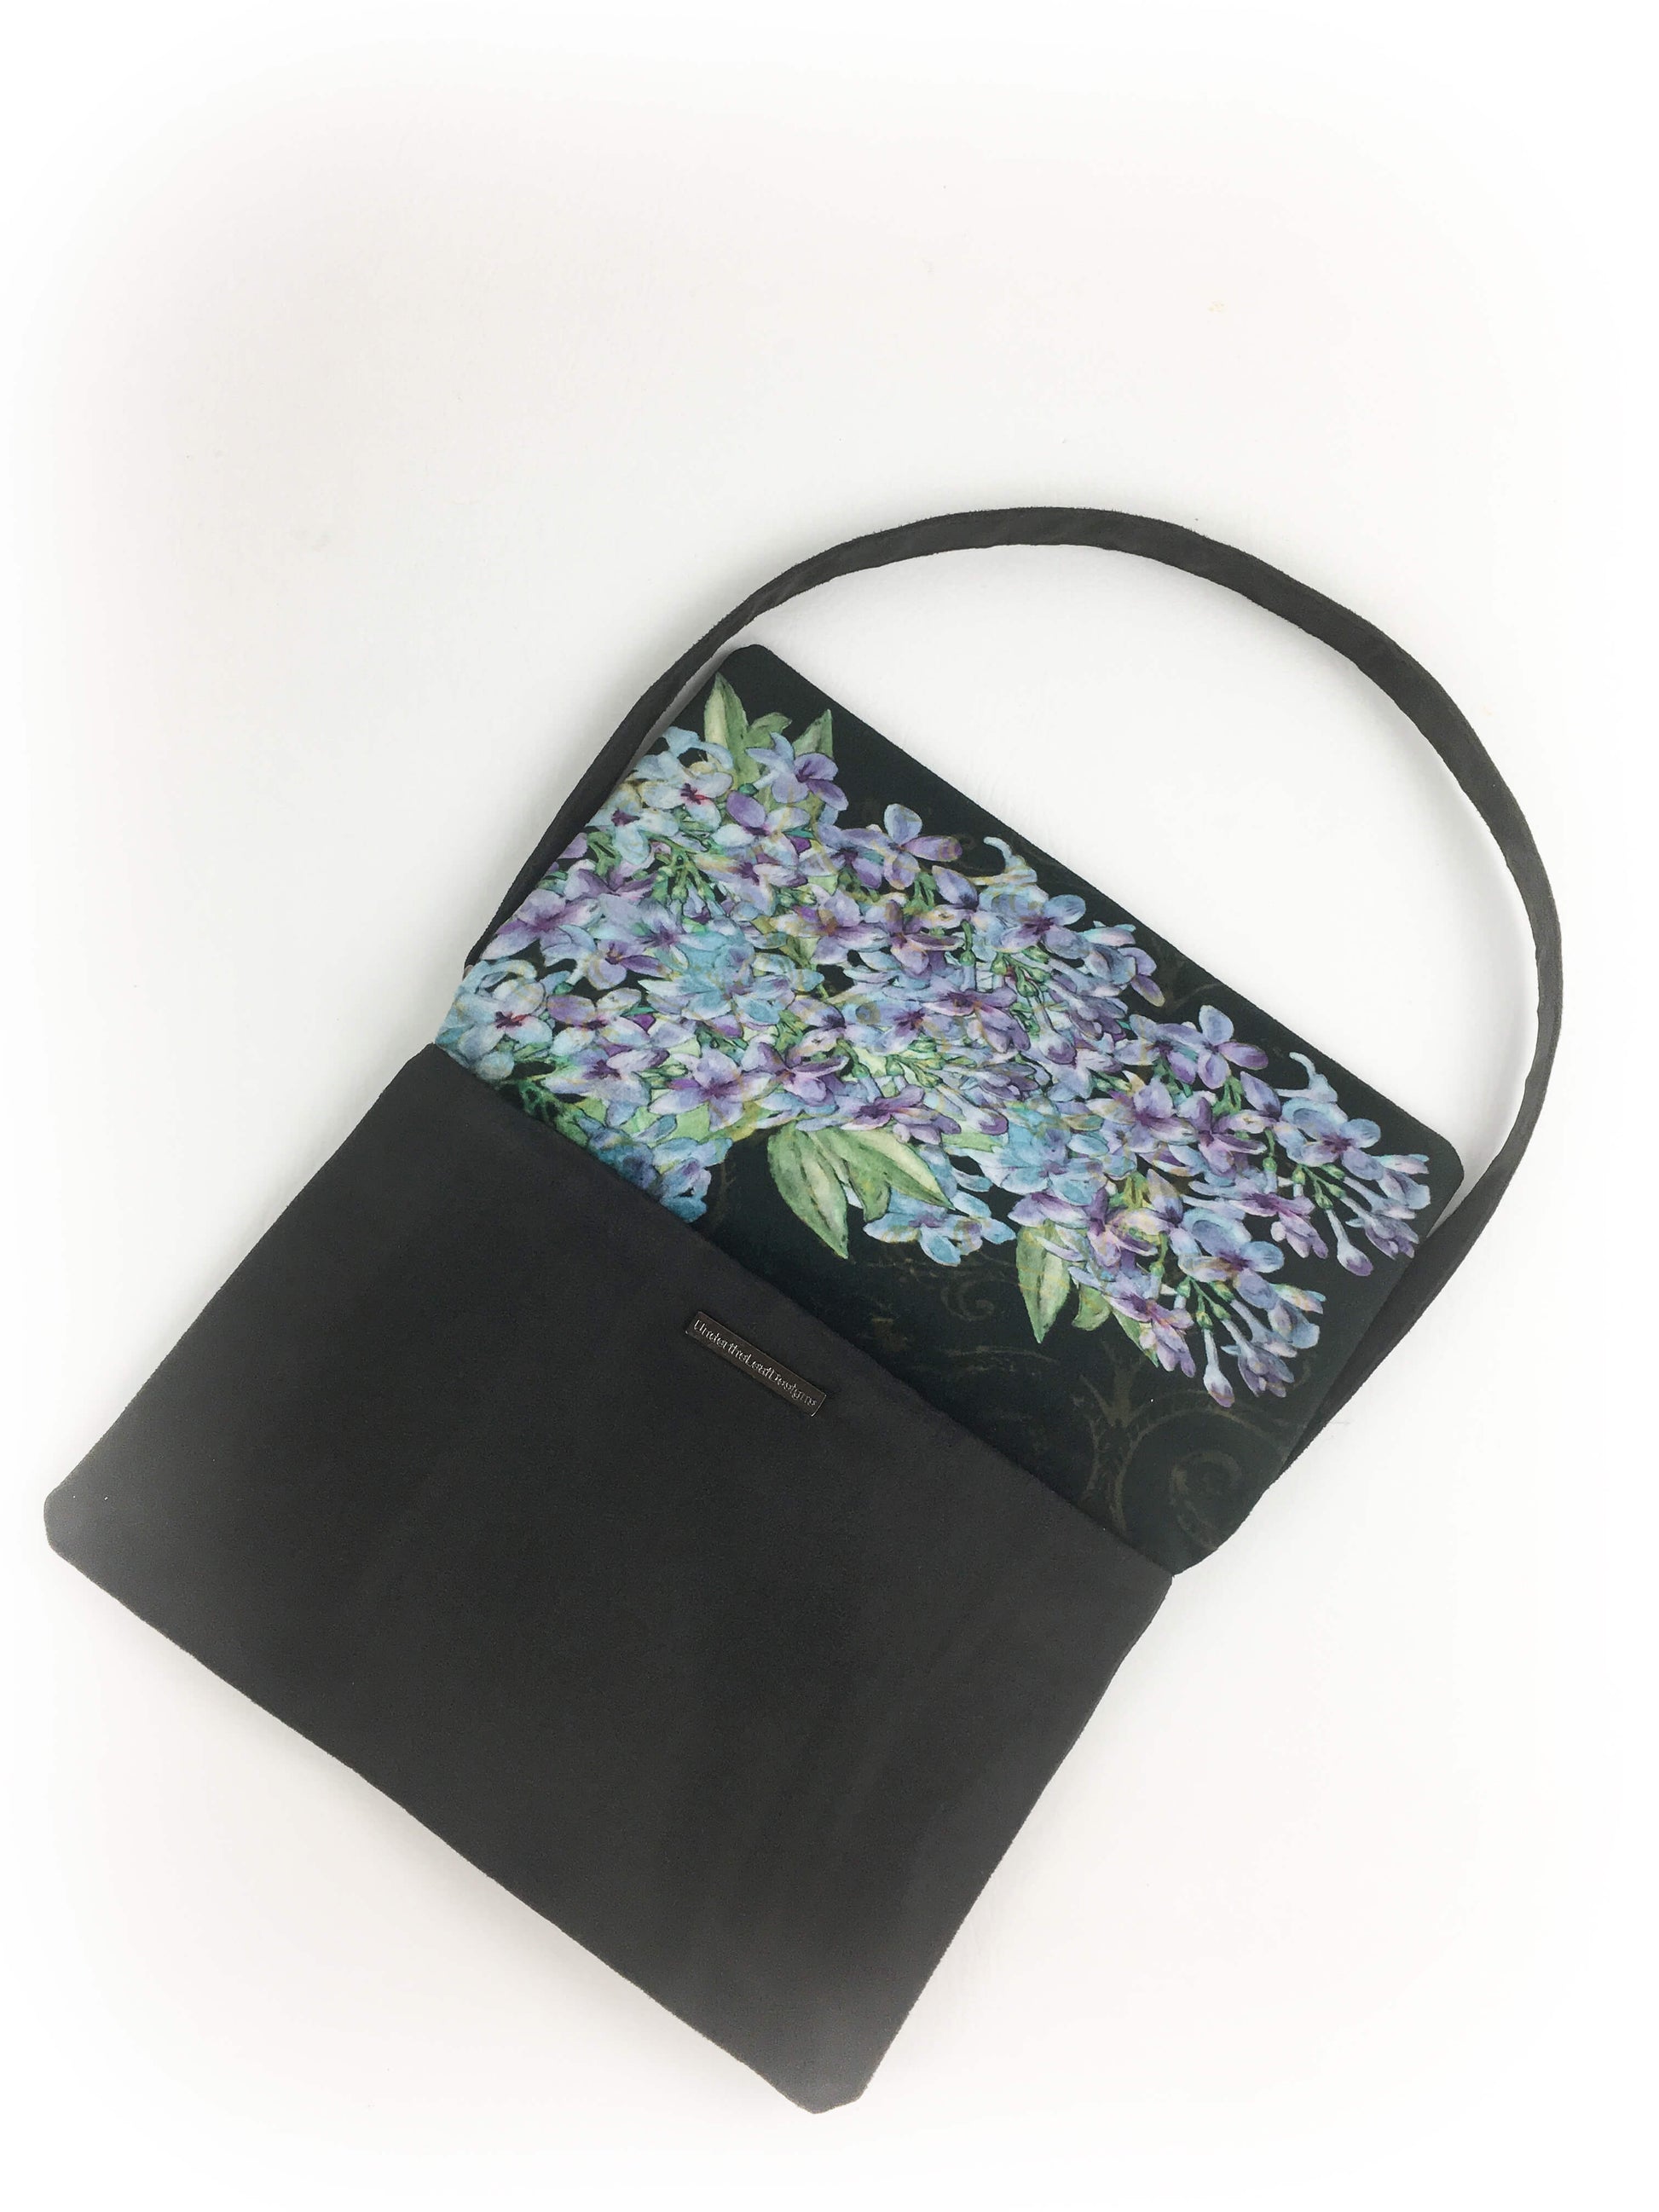 Lilac Clutch/Crossbody/Shoulder Bag in Velvet/VeganSuede - UndertheLeafDesigns.com